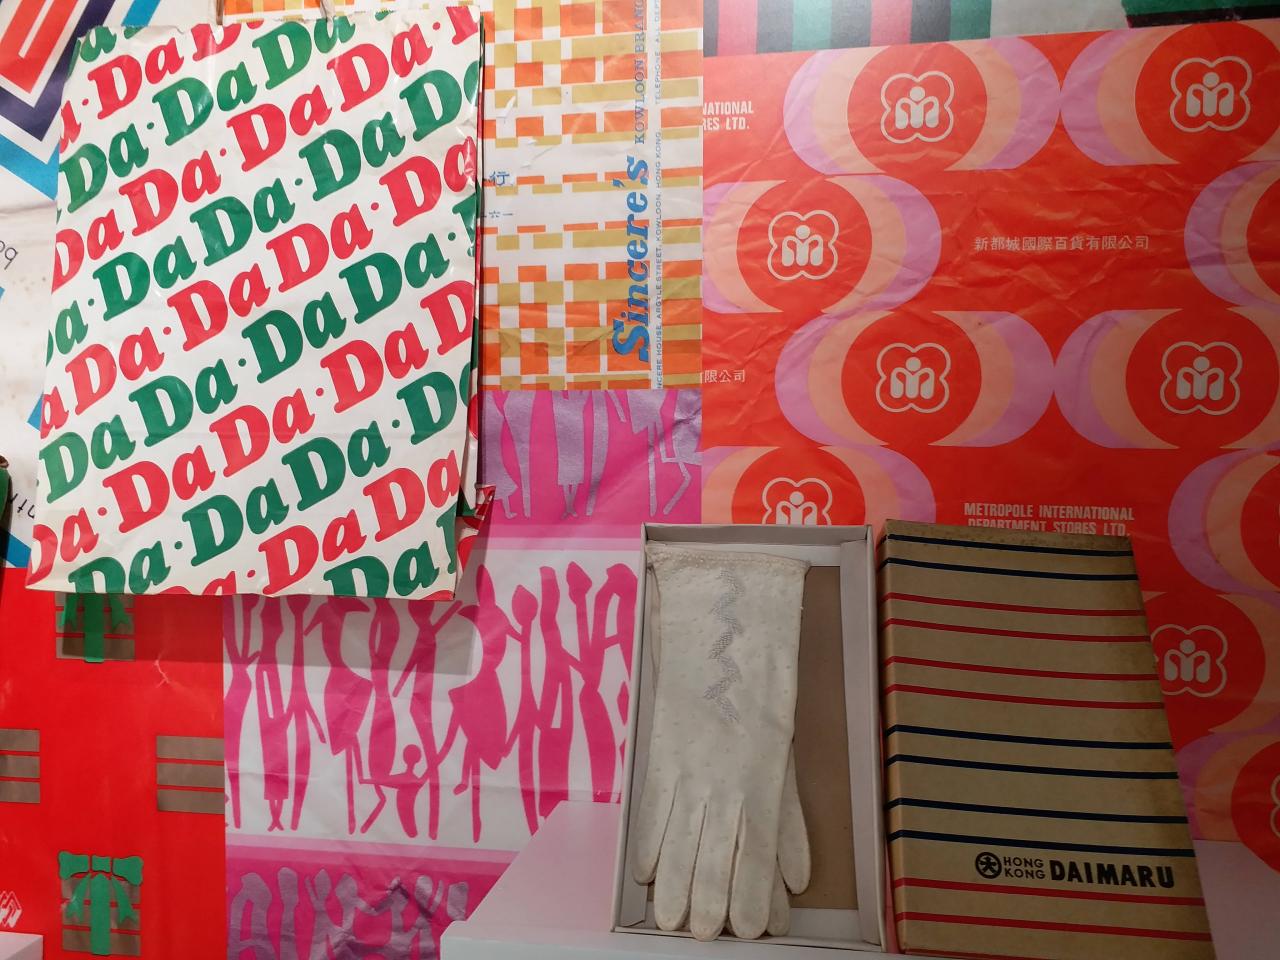 《百貨應百客: 香港零售業平面設計1960-80s》展覽